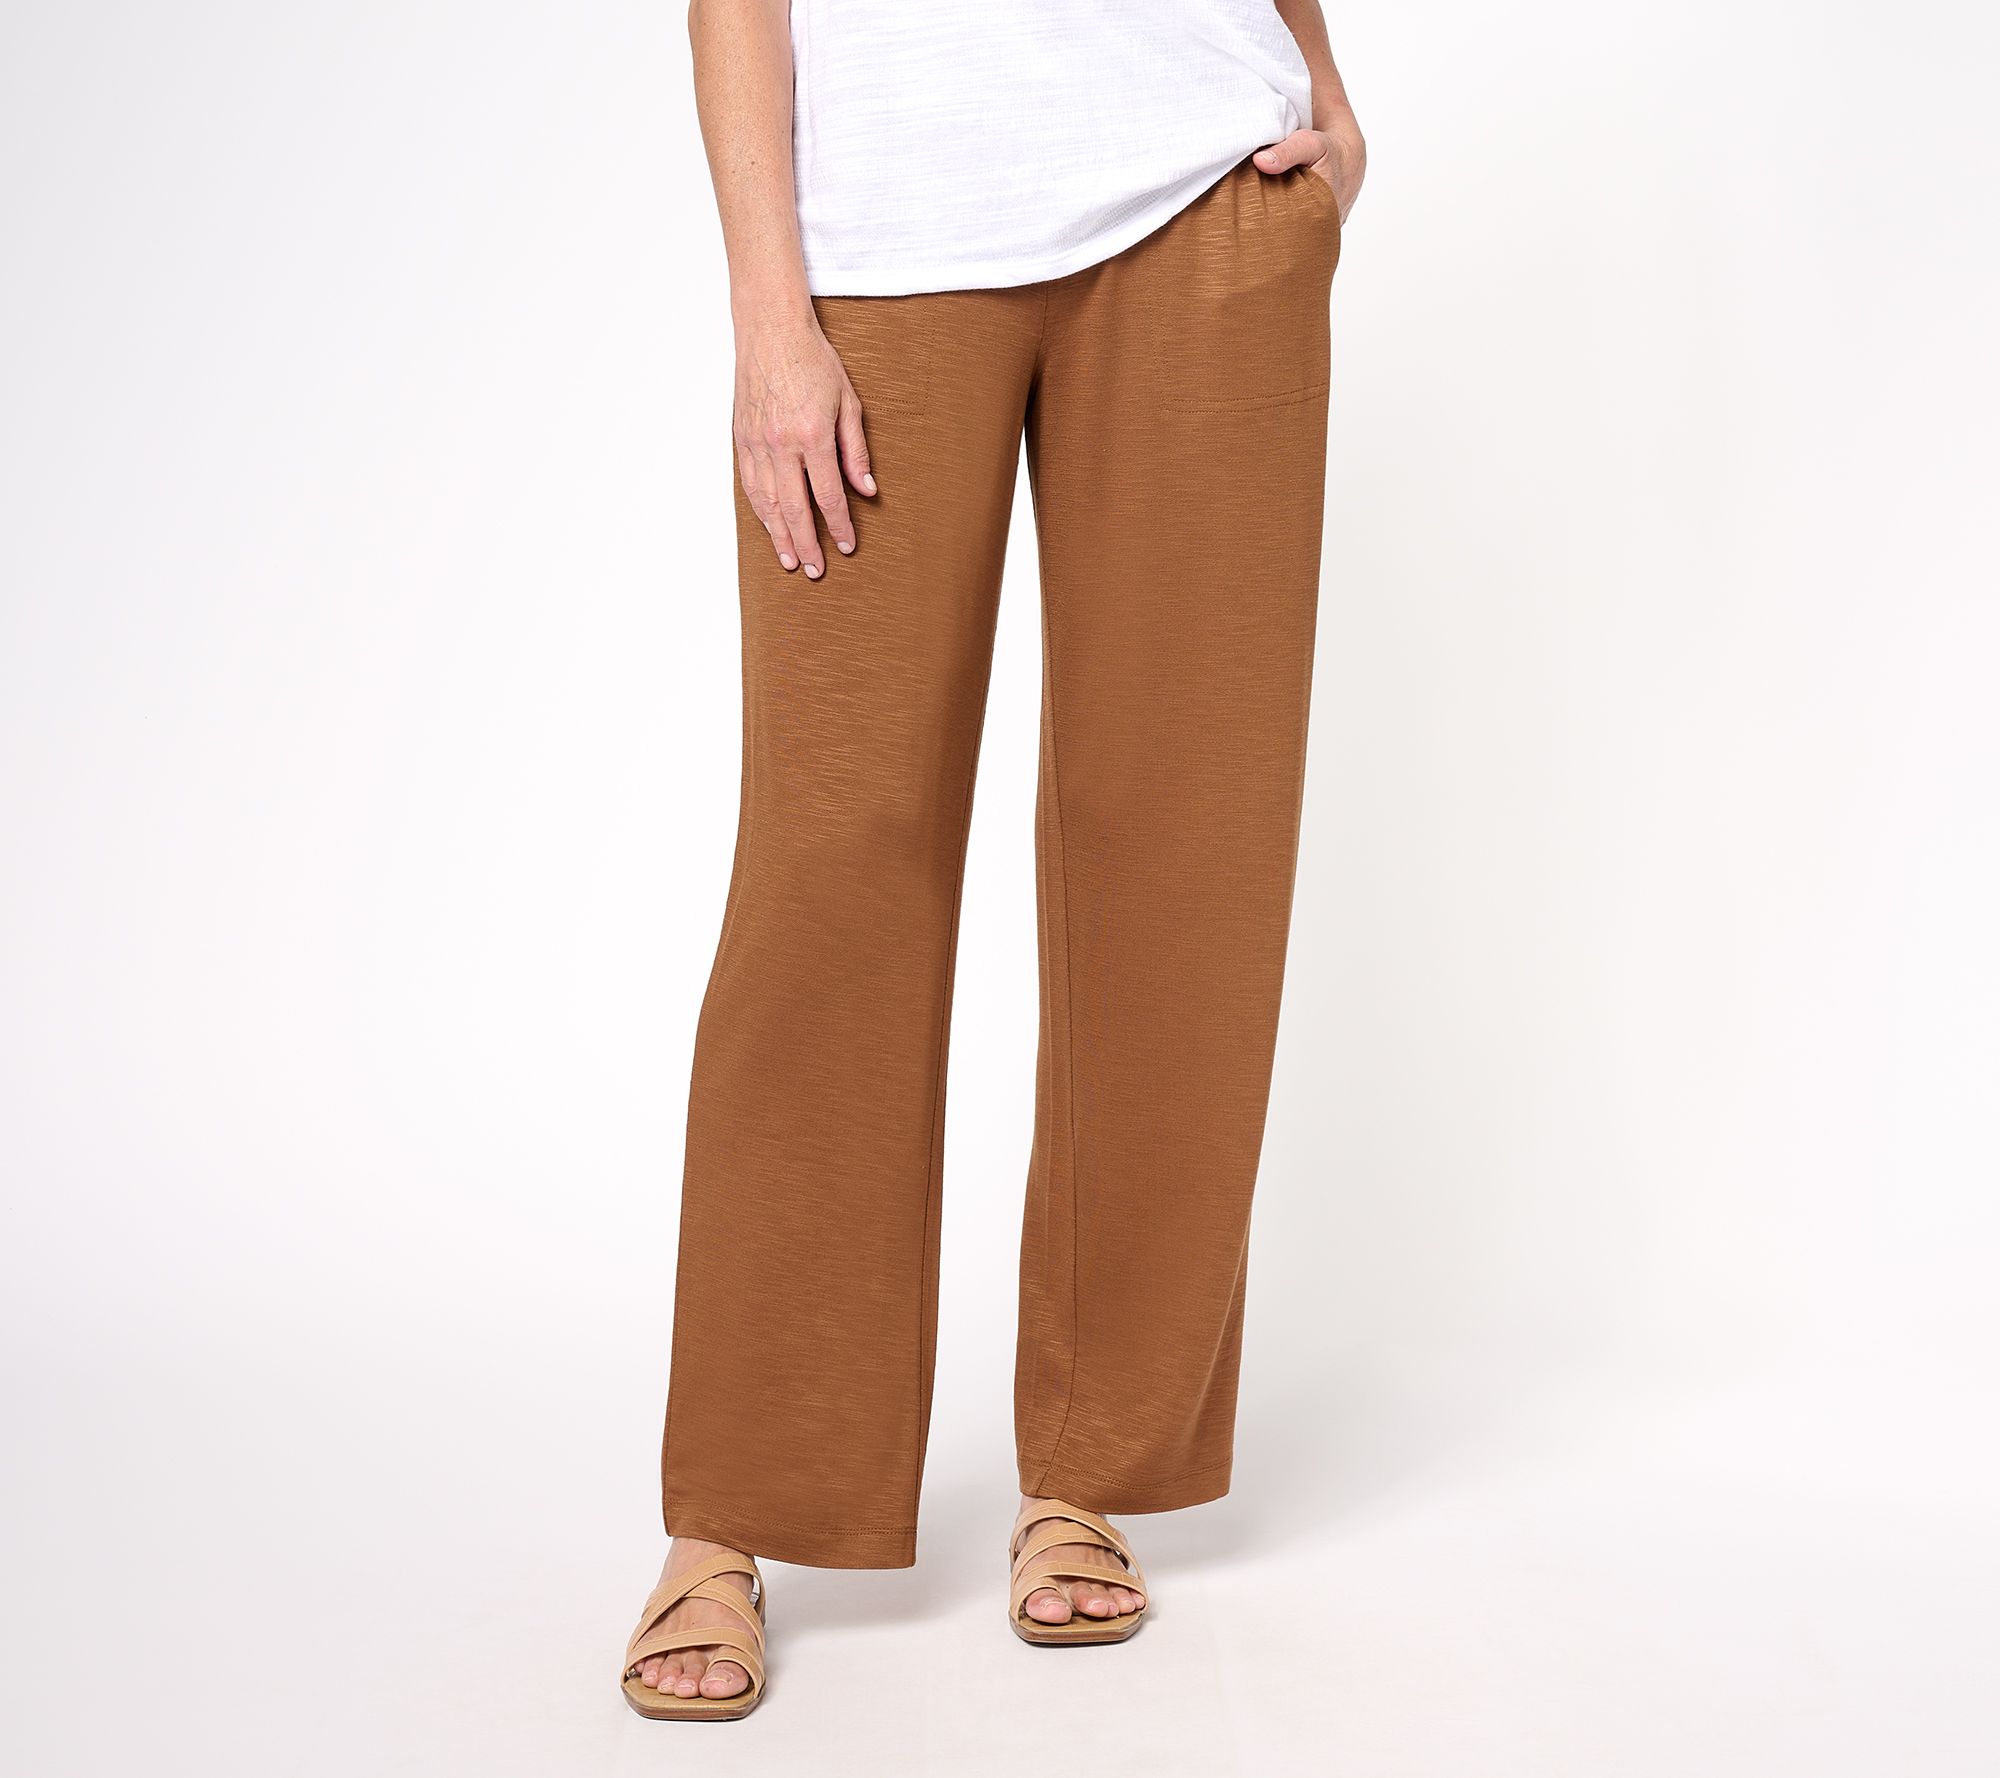 Susan Graver Gray Casual Pants Size 14 (Petite) - 70% off